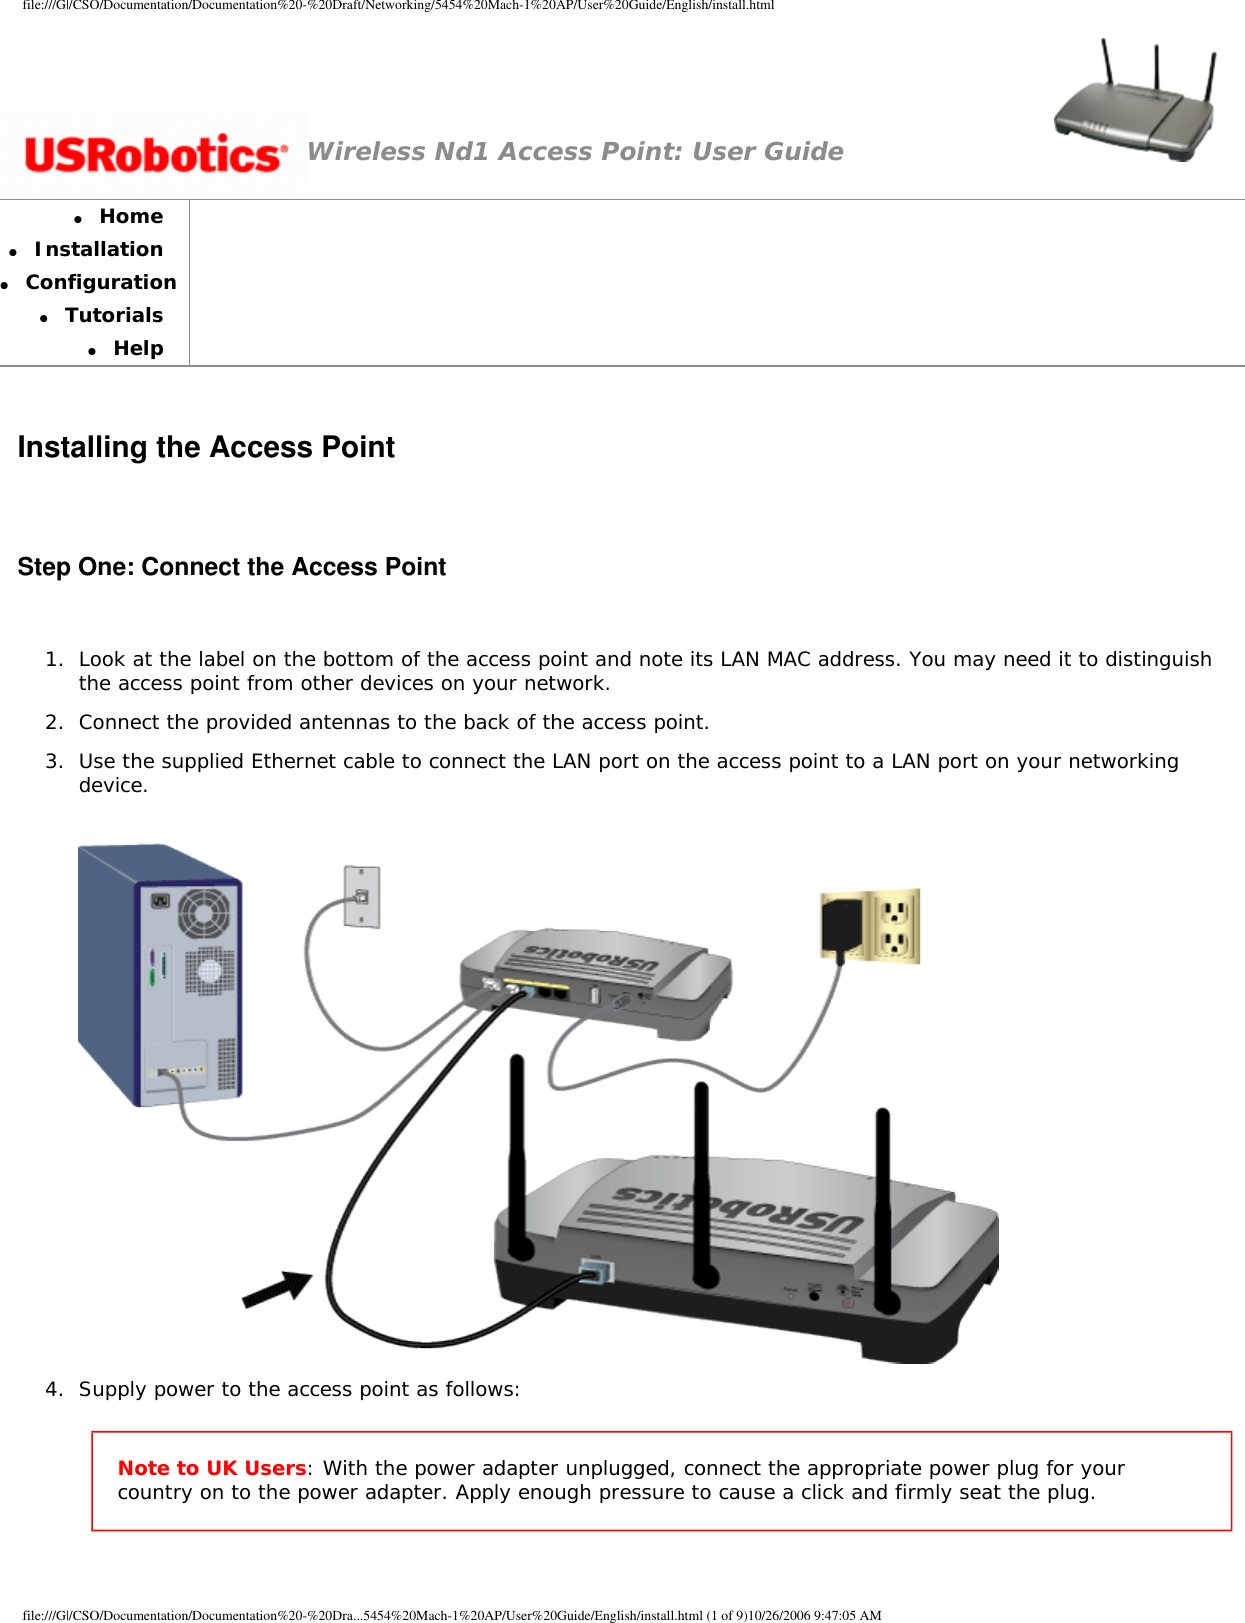 Page 6 of GemTek Technology A950630GN USRobotics Wireless Nd1 Access Point User Manual Manual